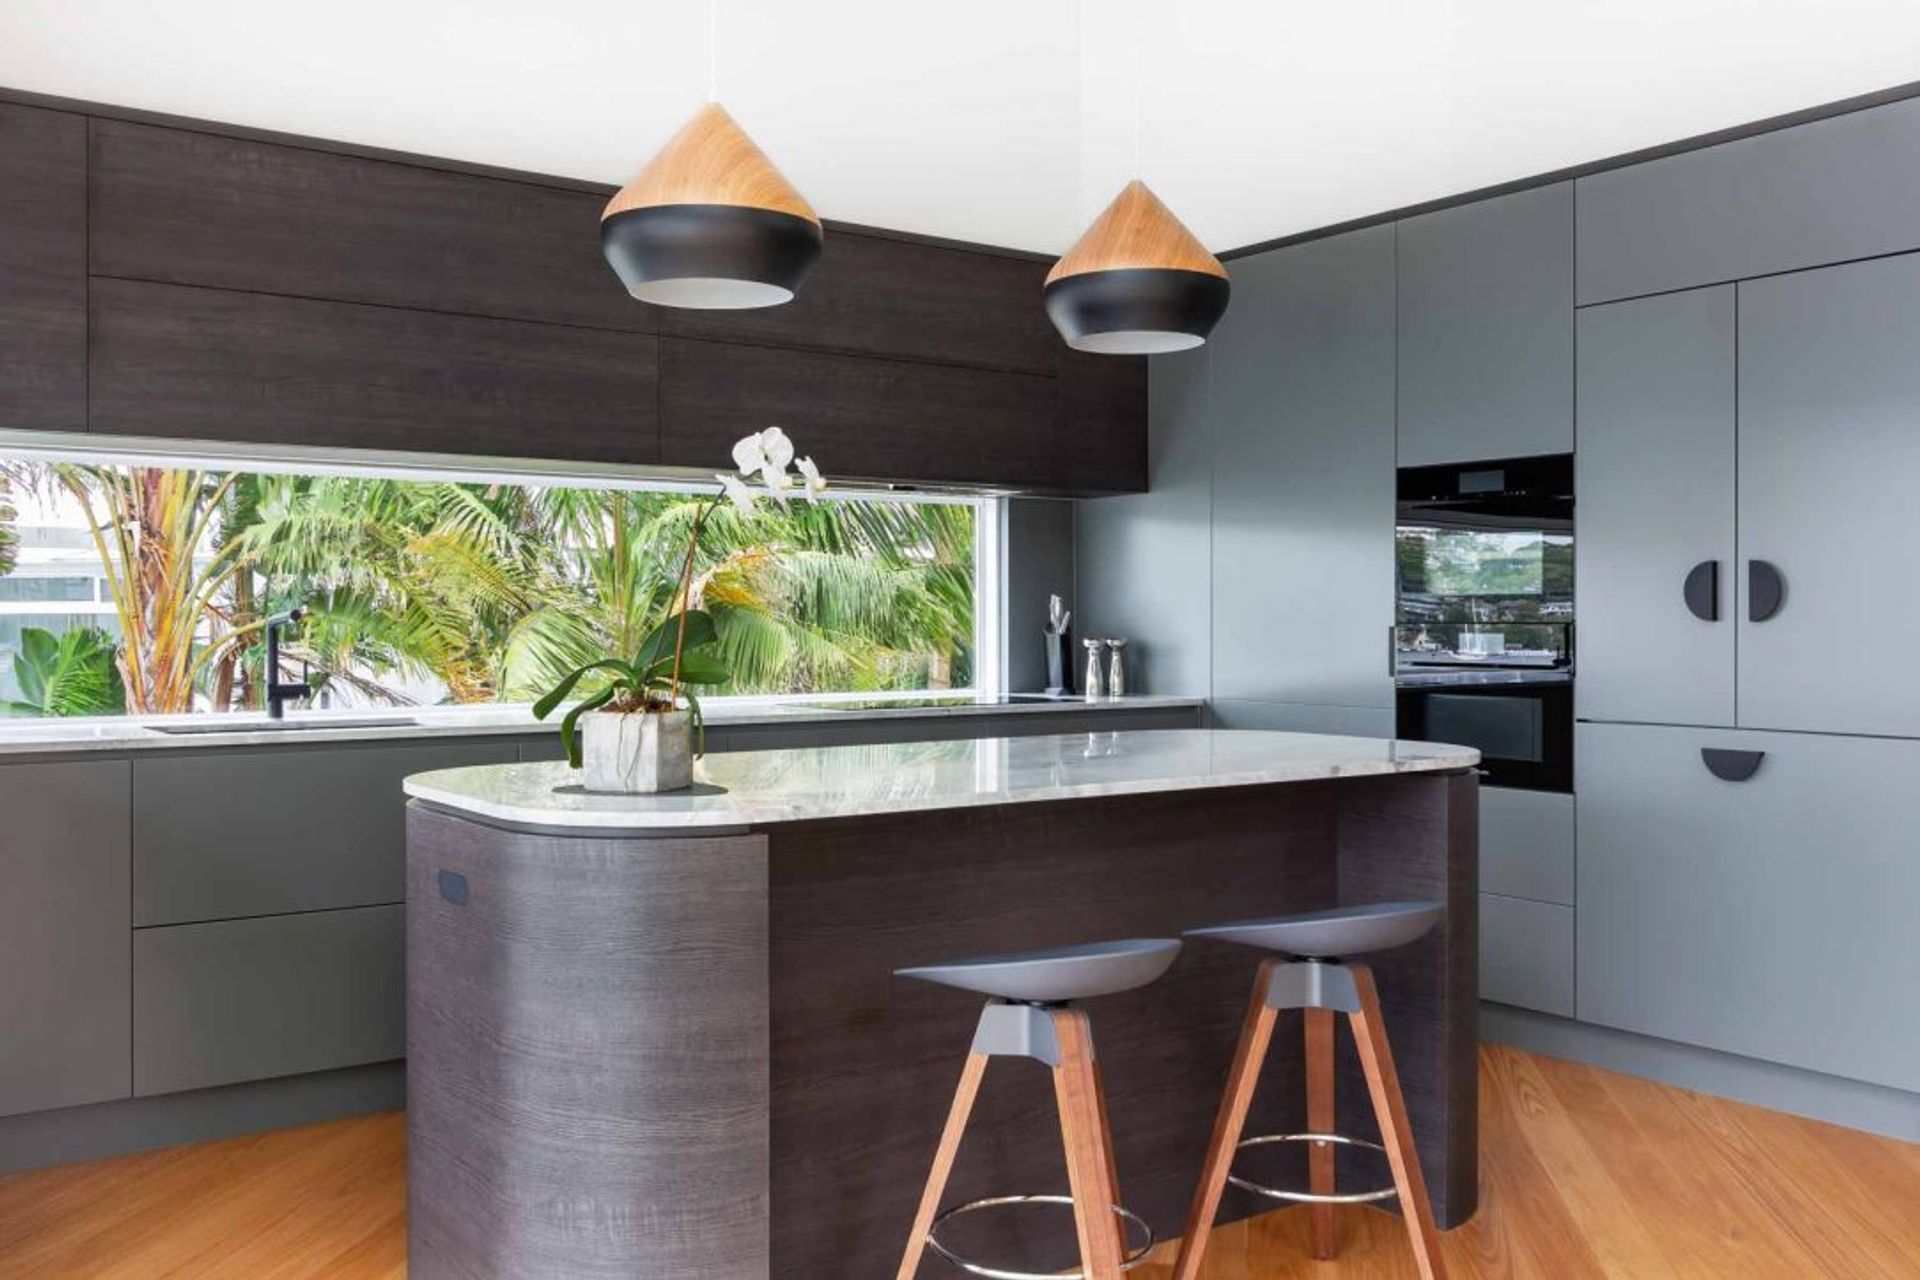 kitchen-design-sydney-luxury-miele-curved-island-benchtop-premier-kitchens-1-1084x723.jpg